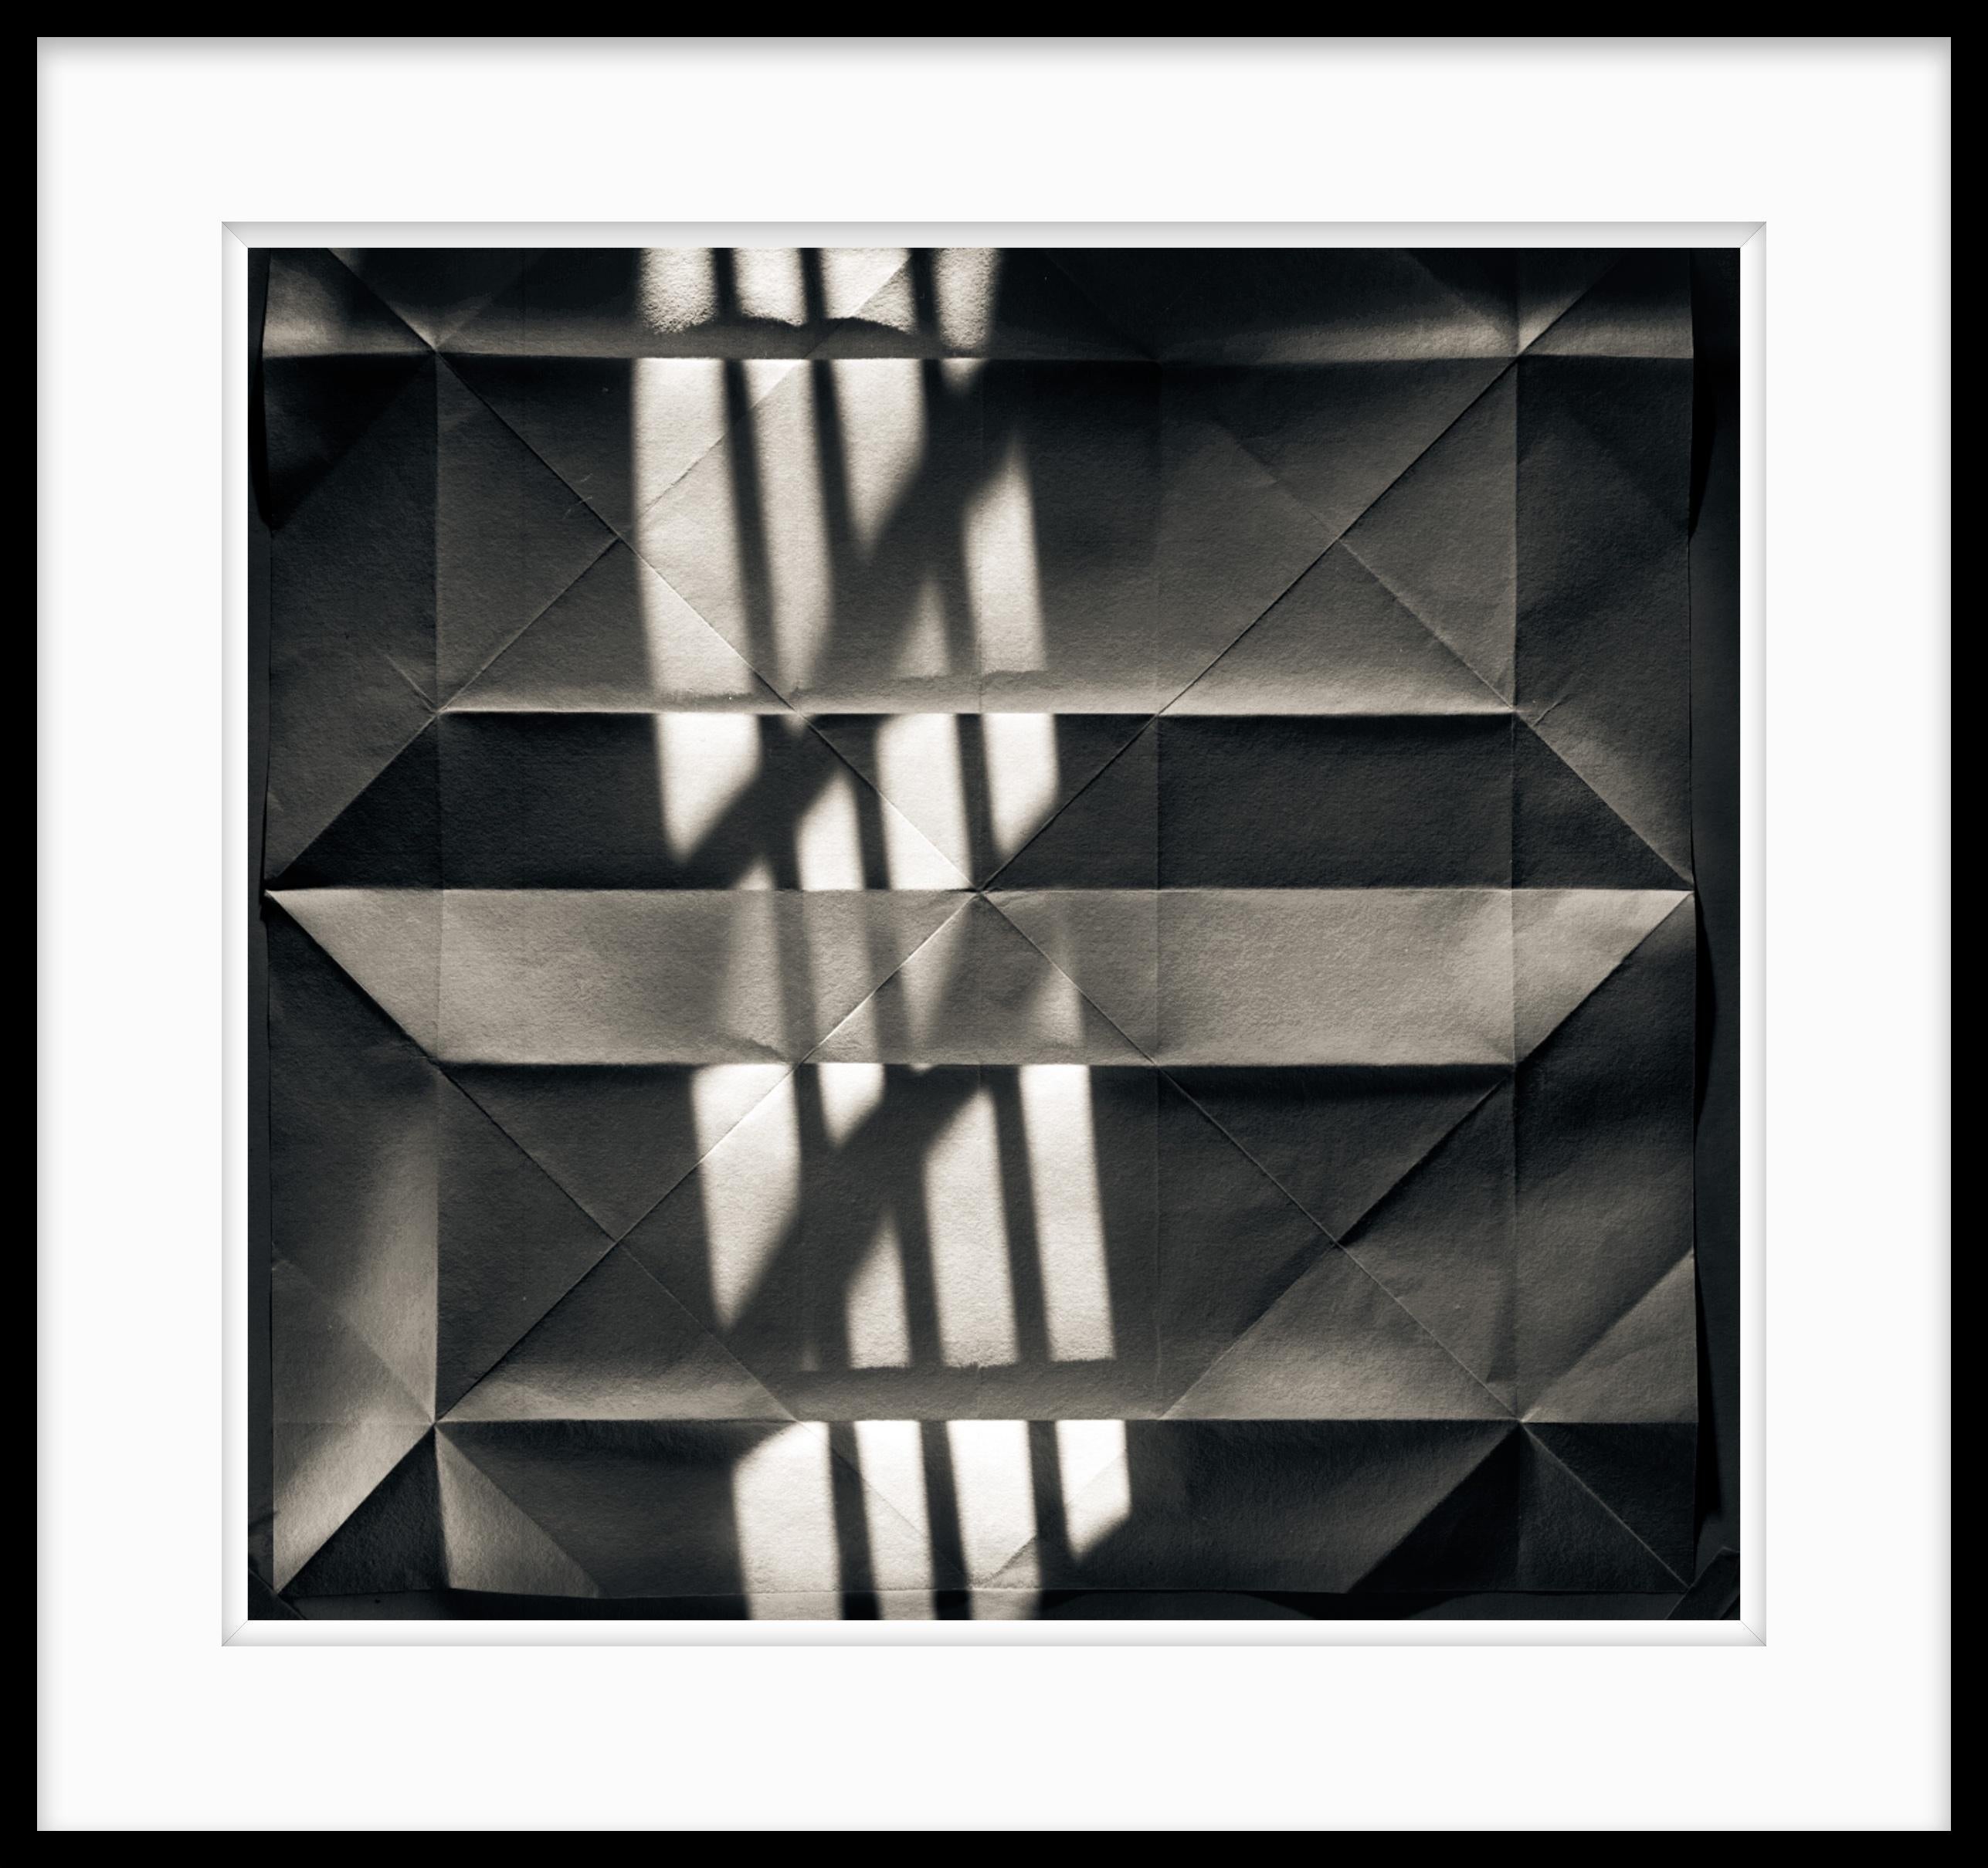  Abstrakte Fotografie in Schwarz-Weiß in limitierter Auflage  - Origami Klappdeckel #38 – Photograph von Howard Lewis